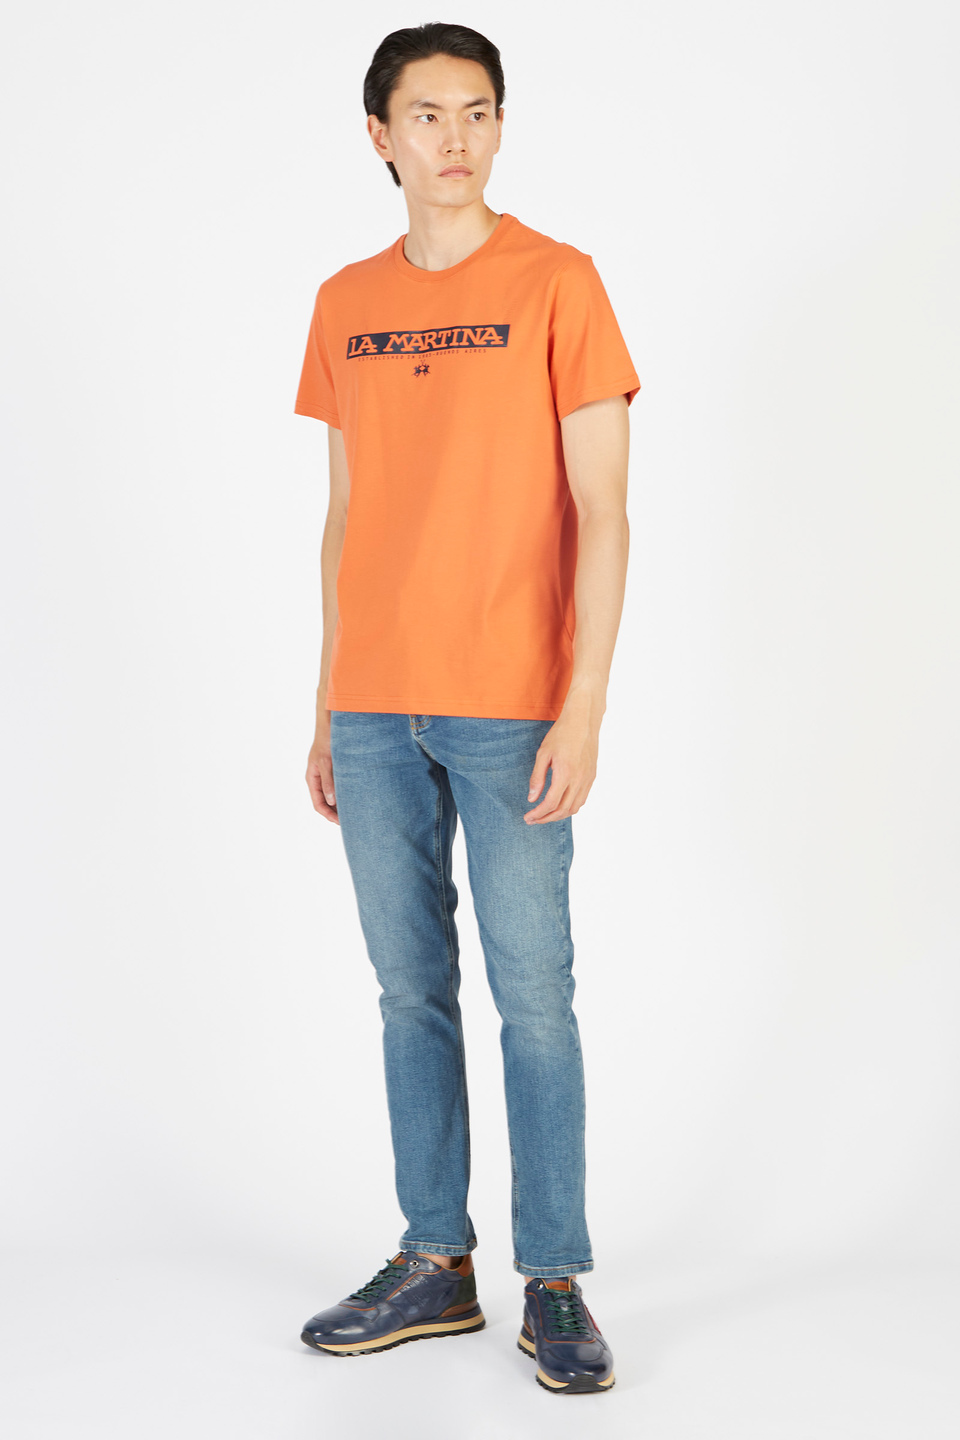 T-shirt da uomo a maniche corte modello girocollo regular fit | La Martina - Official Online Shop